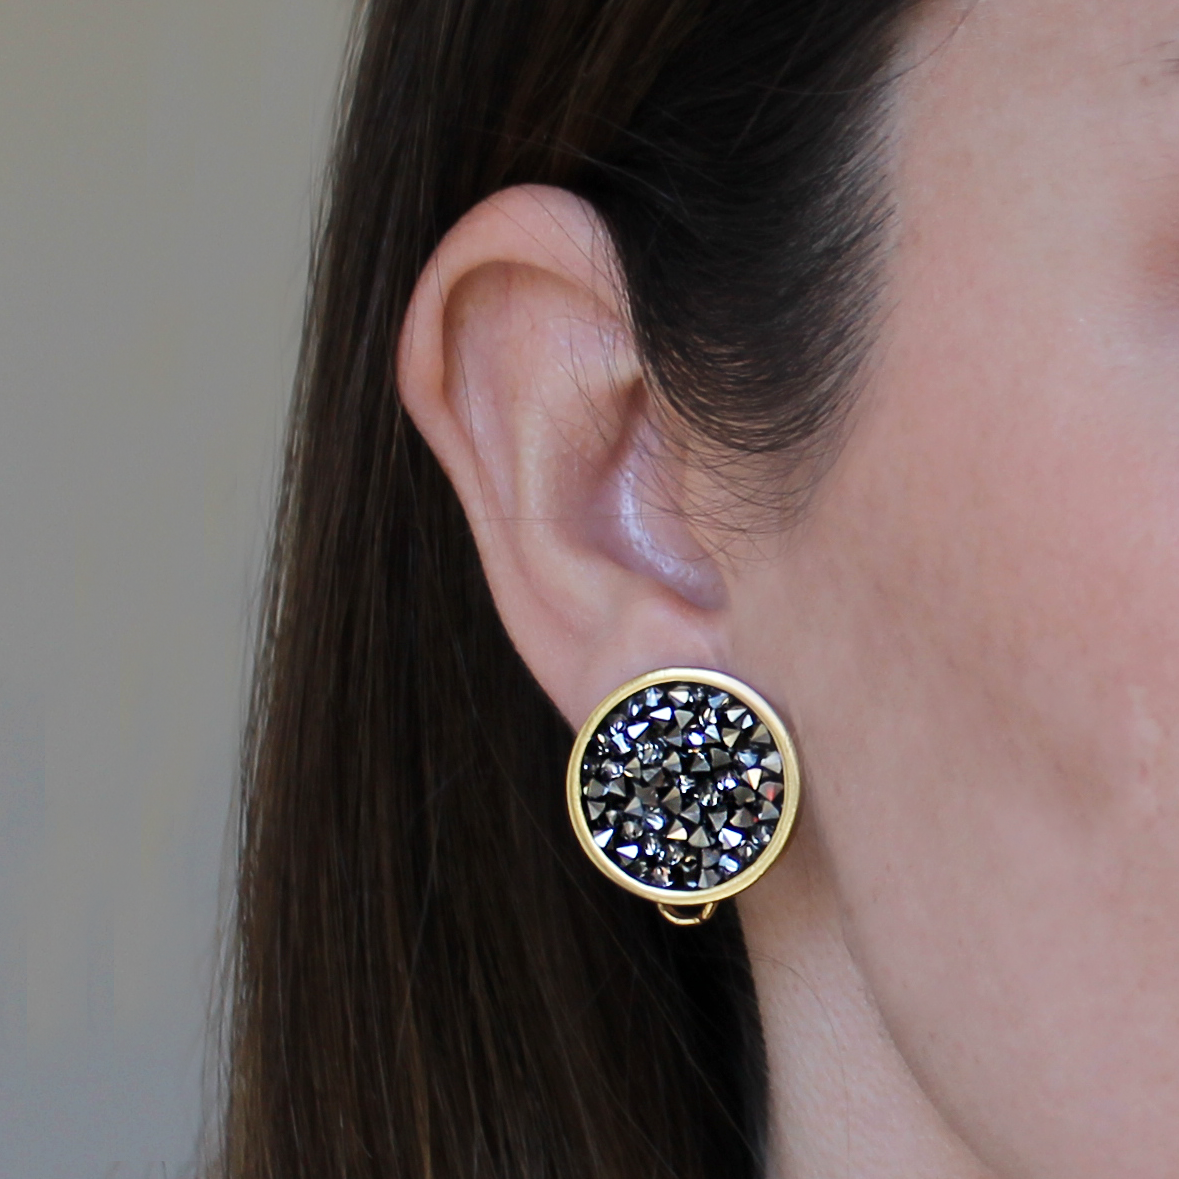 Crystal cluster clip-on earrings - Karine Sultan